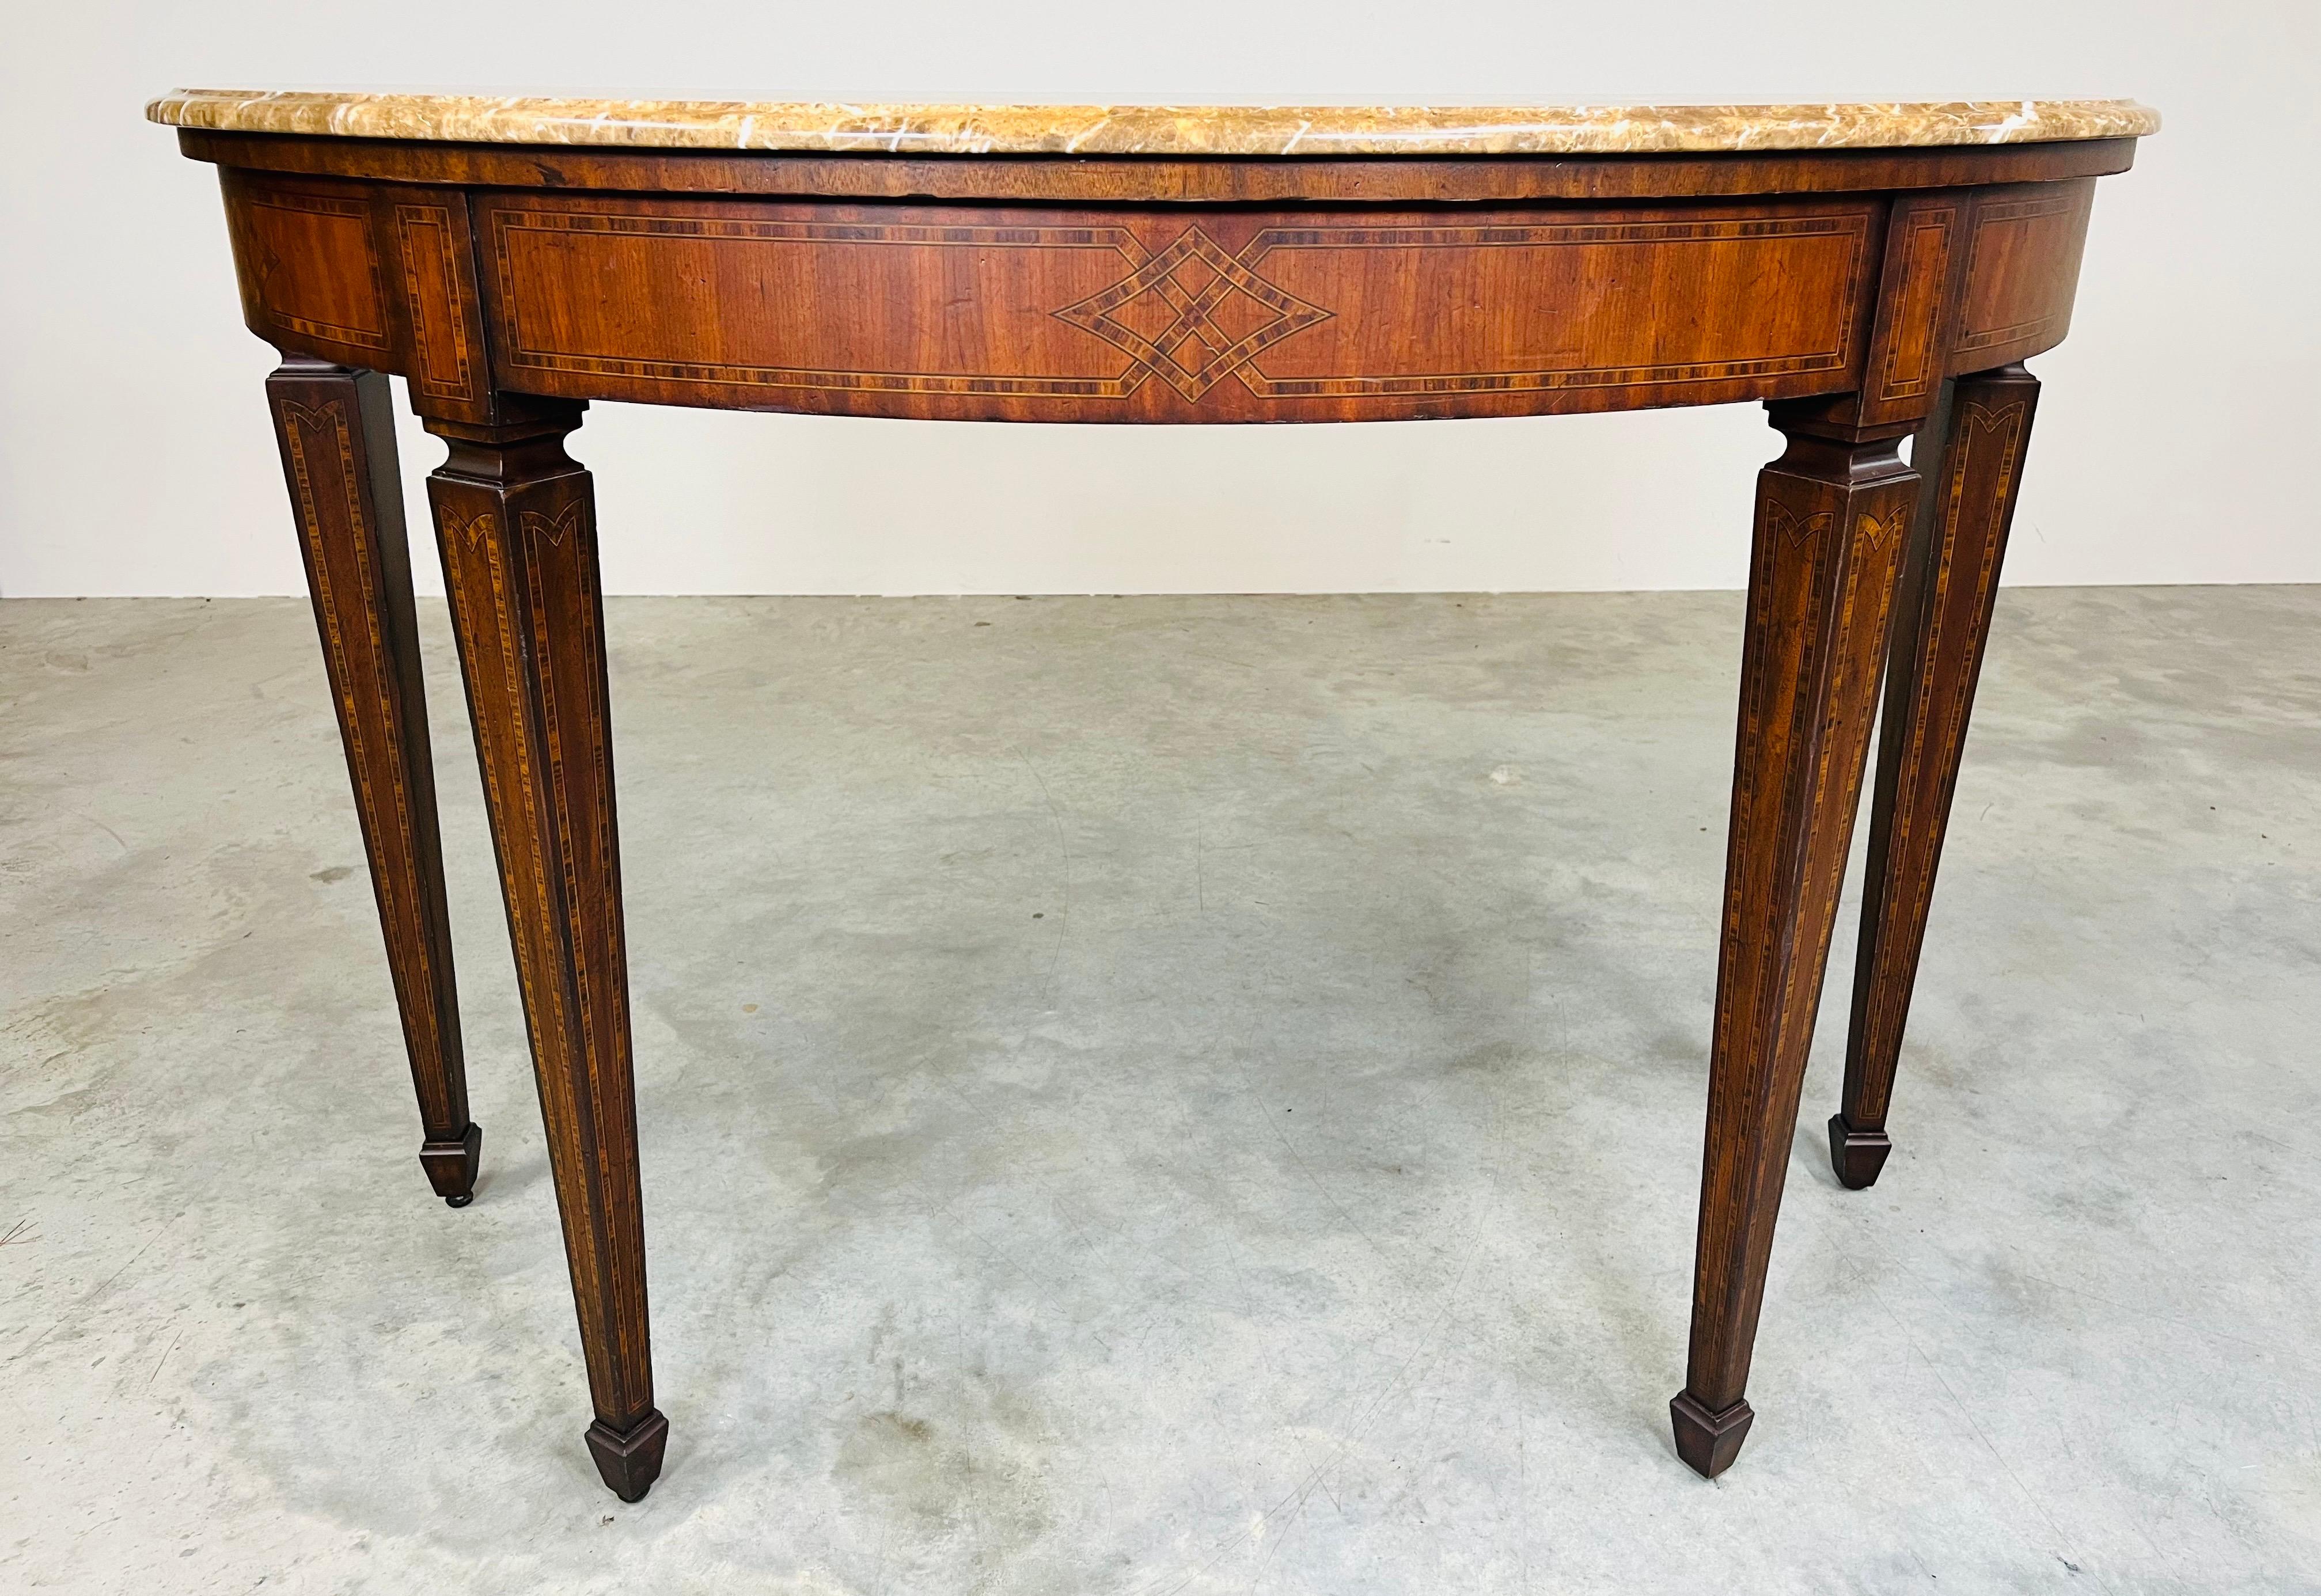 Une superbe table Demi-lune de Maitland Smith dans le style Adams avec de belles incrustations de parquet sur l'ensemble, des pieds fuselés et un plateau en granit. 
En parfait état. Le bois a été nettoyé et traité pour une meilleure longévité.